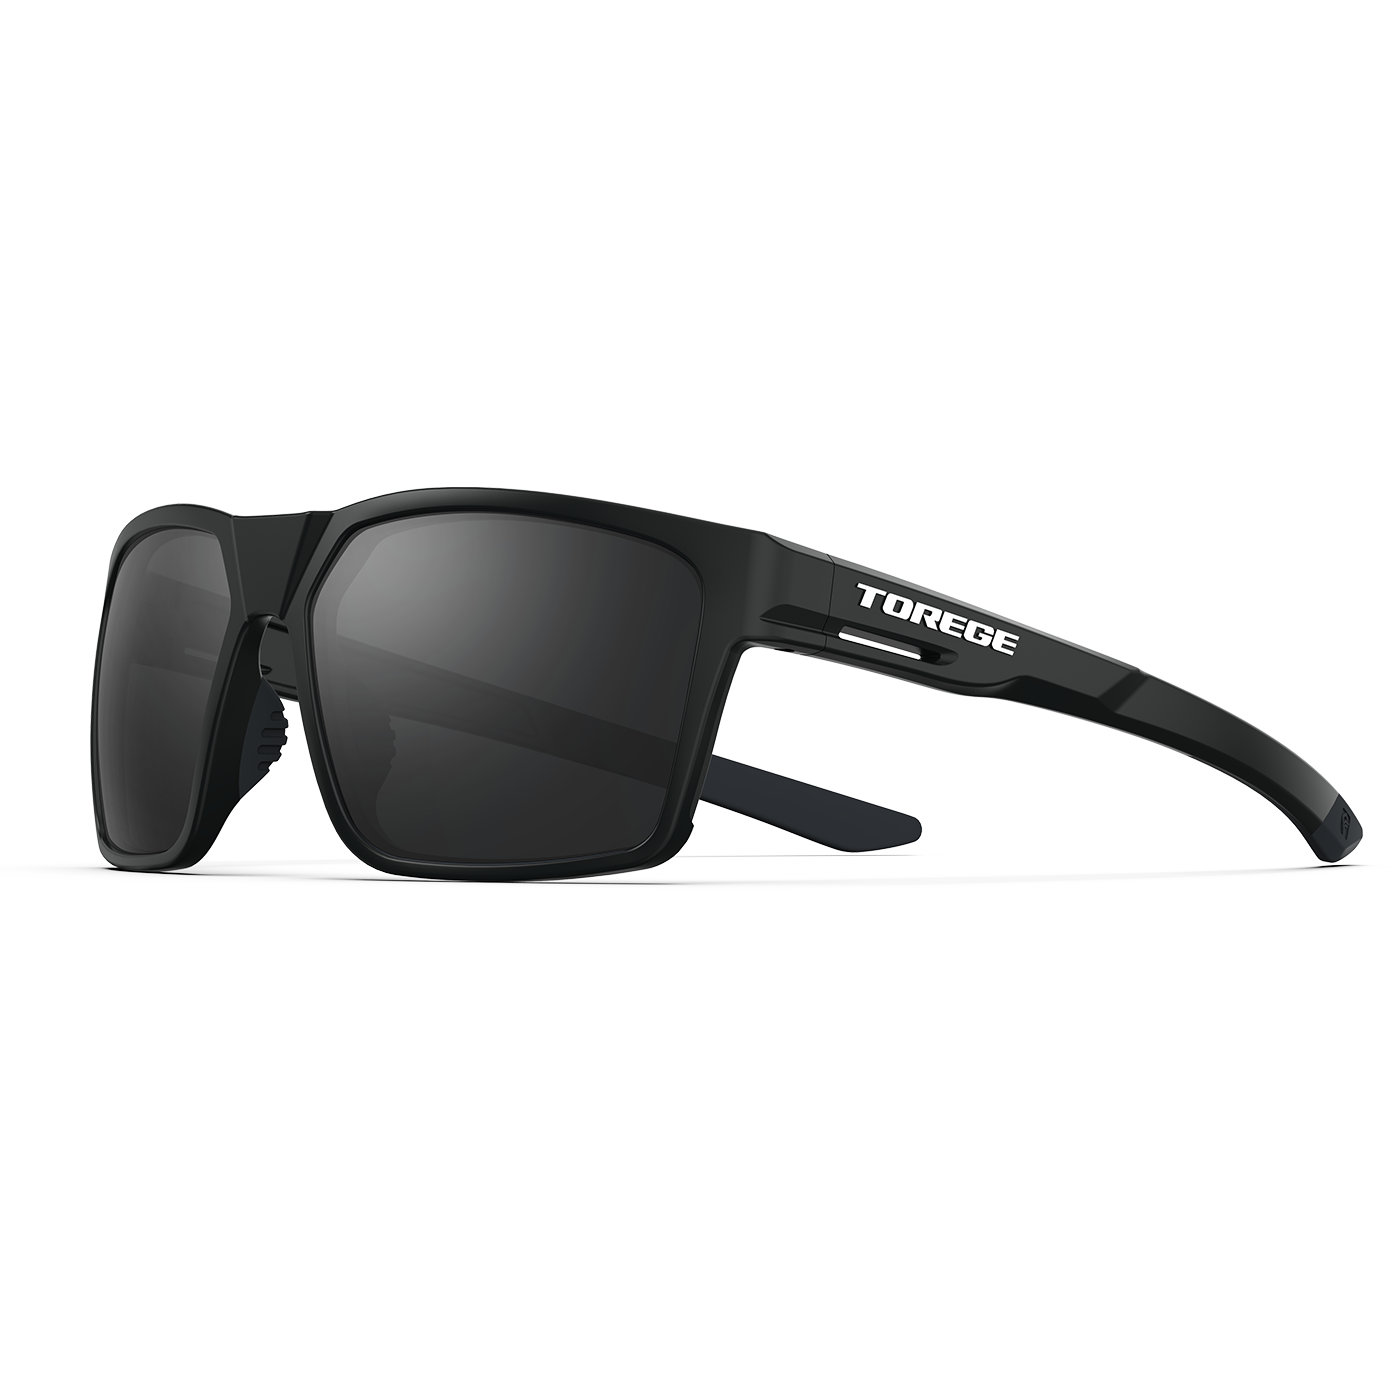 Caddo Polarized Sunglasses - Black Frame & Black Lenses